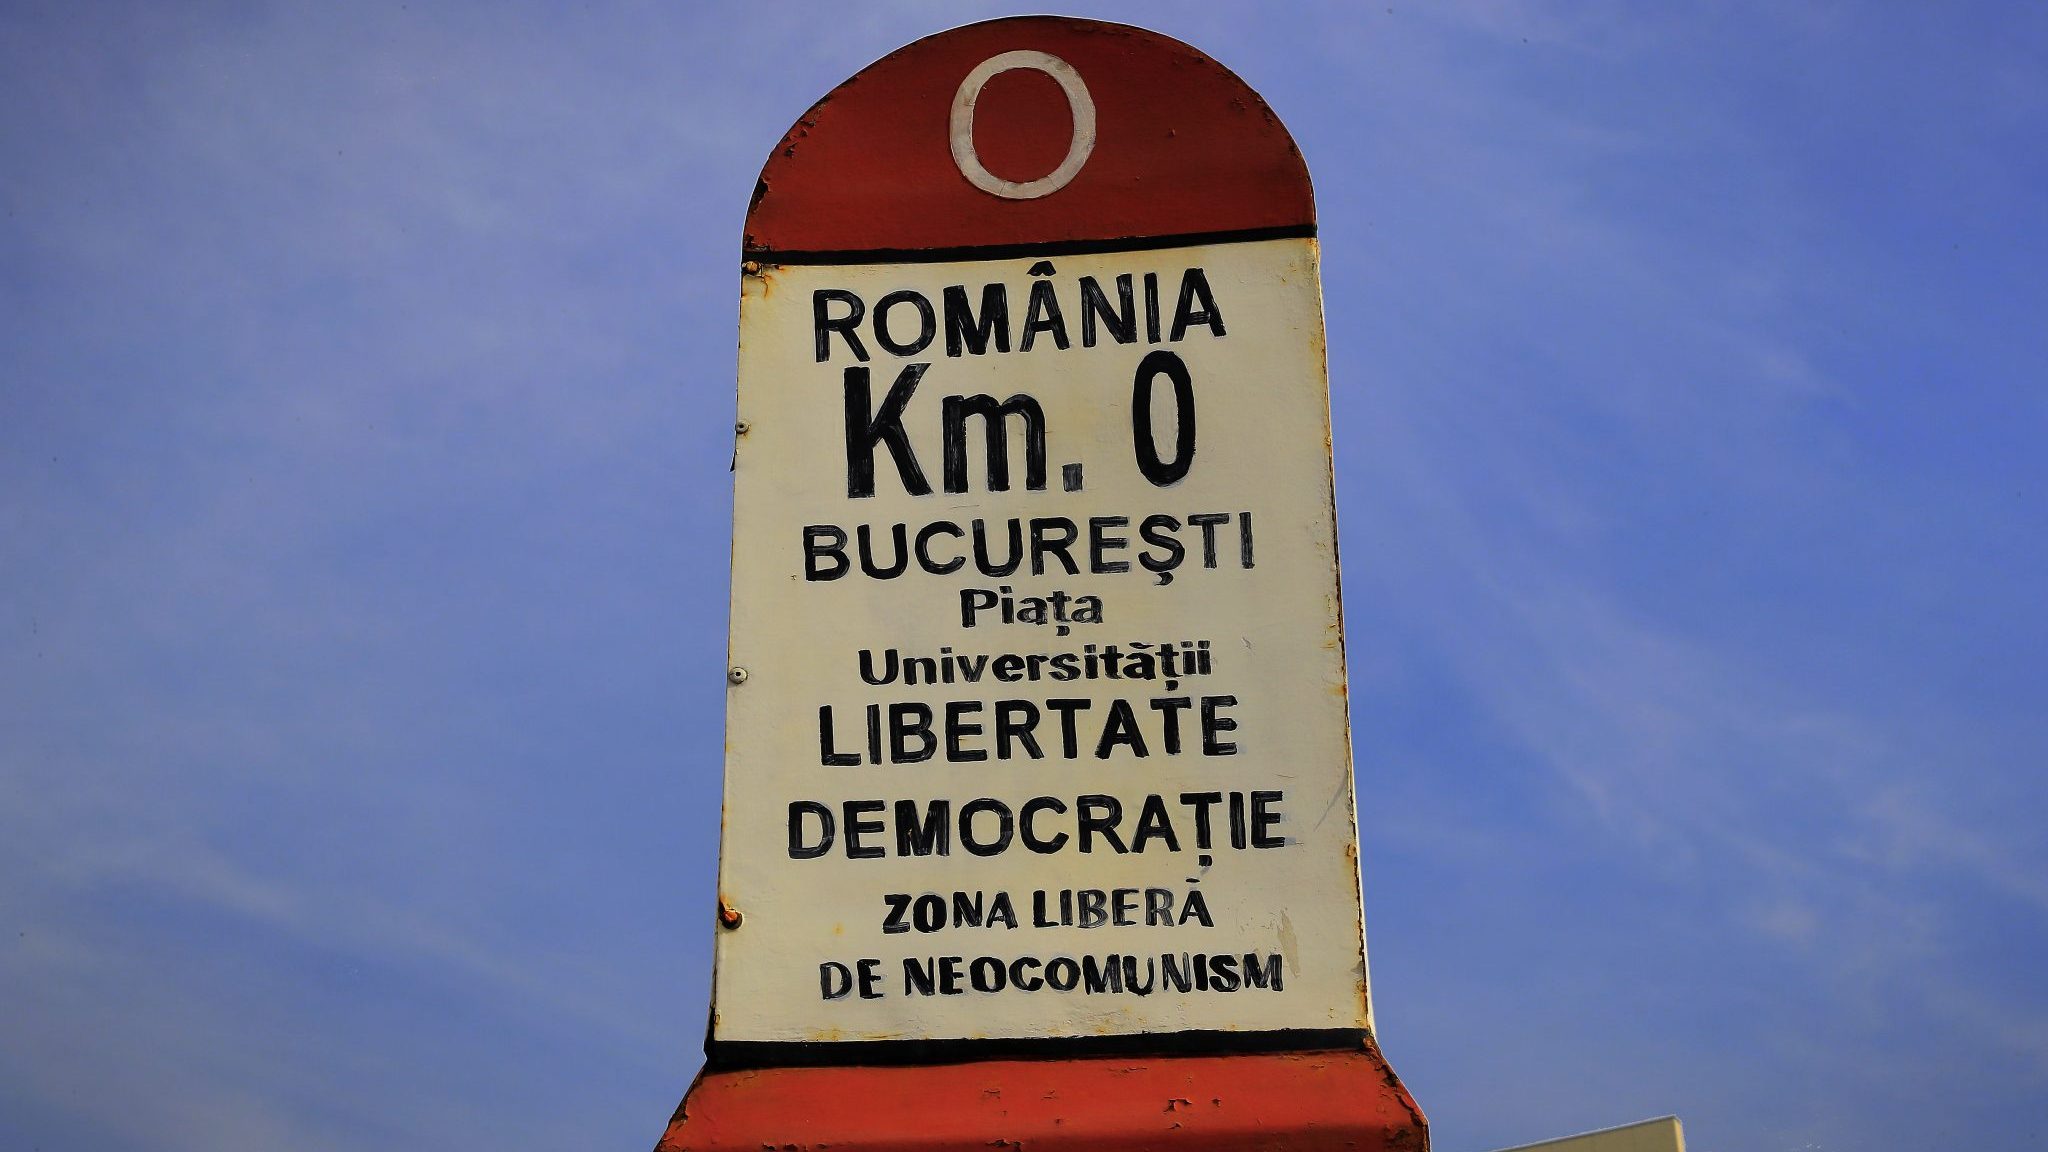 Romania Rejected Communism, It Should Reject Communist 5G.